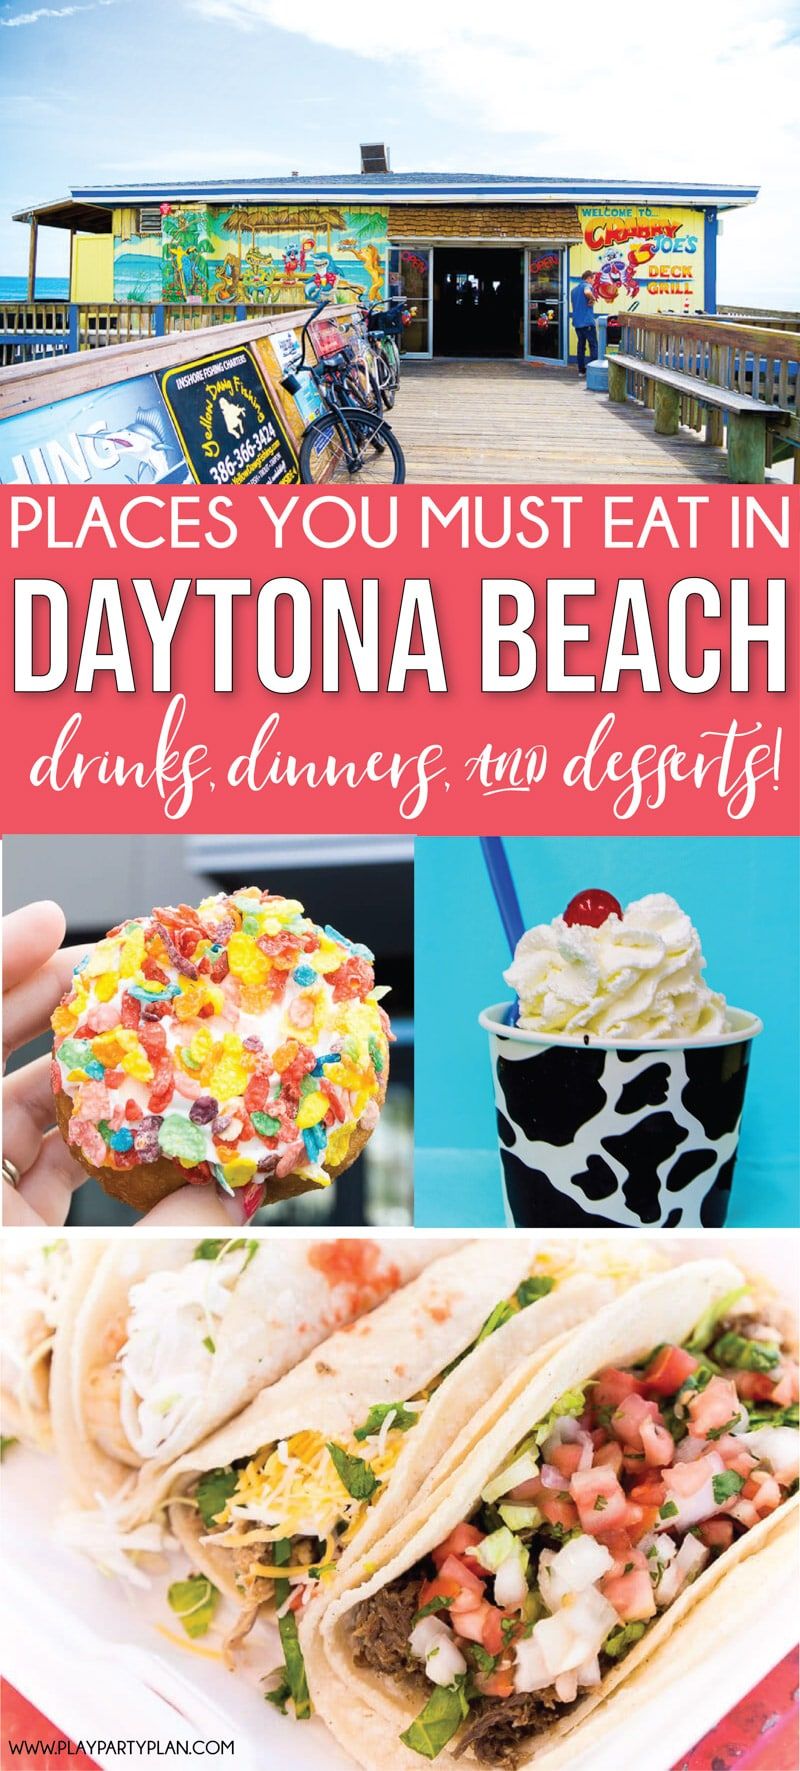 डेटोना बीच फ्लोरिडा में सबसे अच्छा रेस्तरां! समुद्र तट के पास बोर्डवॉक पर भोजन से लेकर भोजन तक सब कुछ!